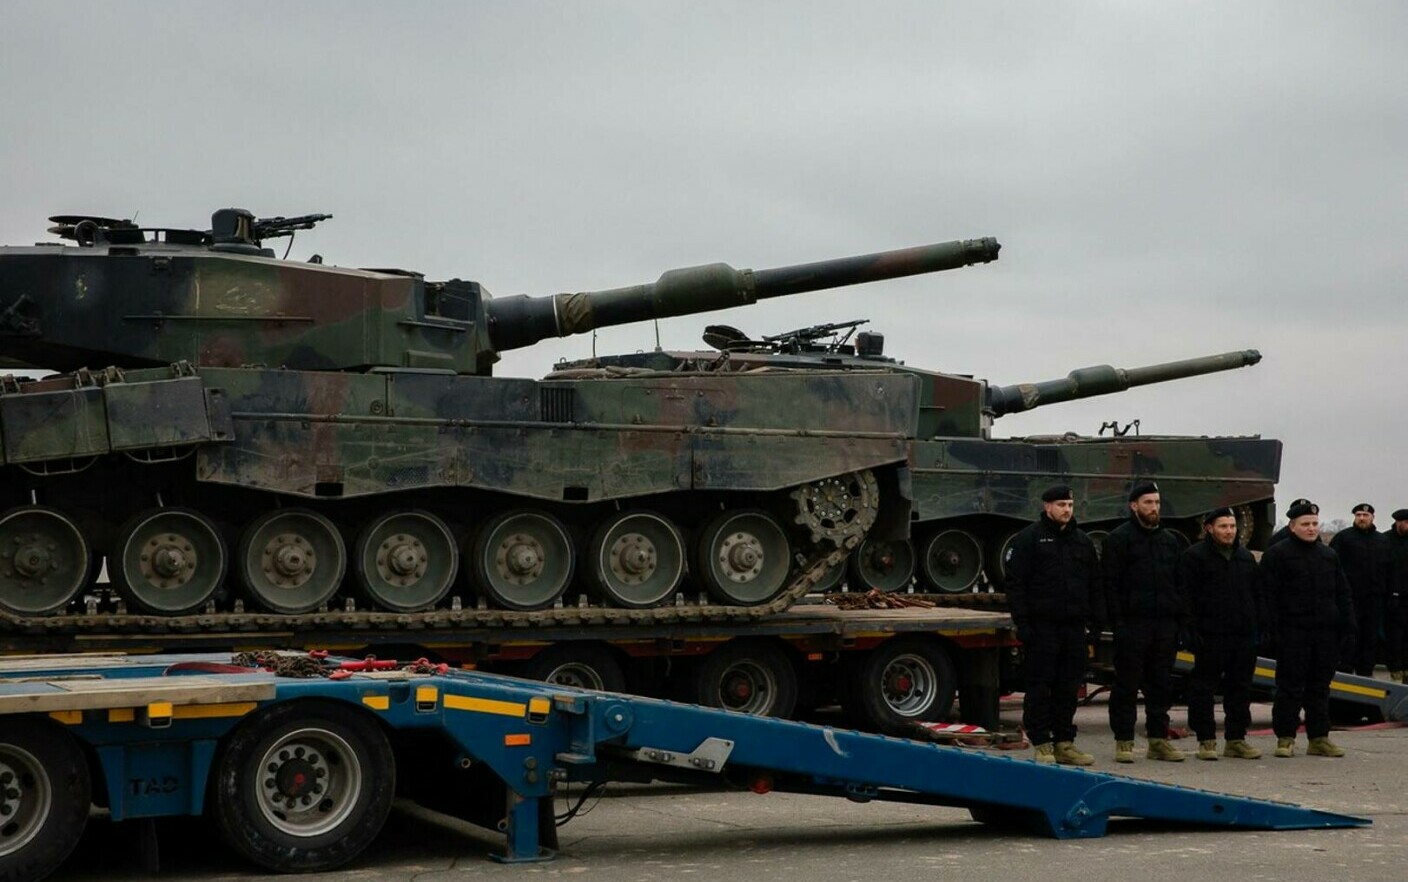 tancuri leopard 2